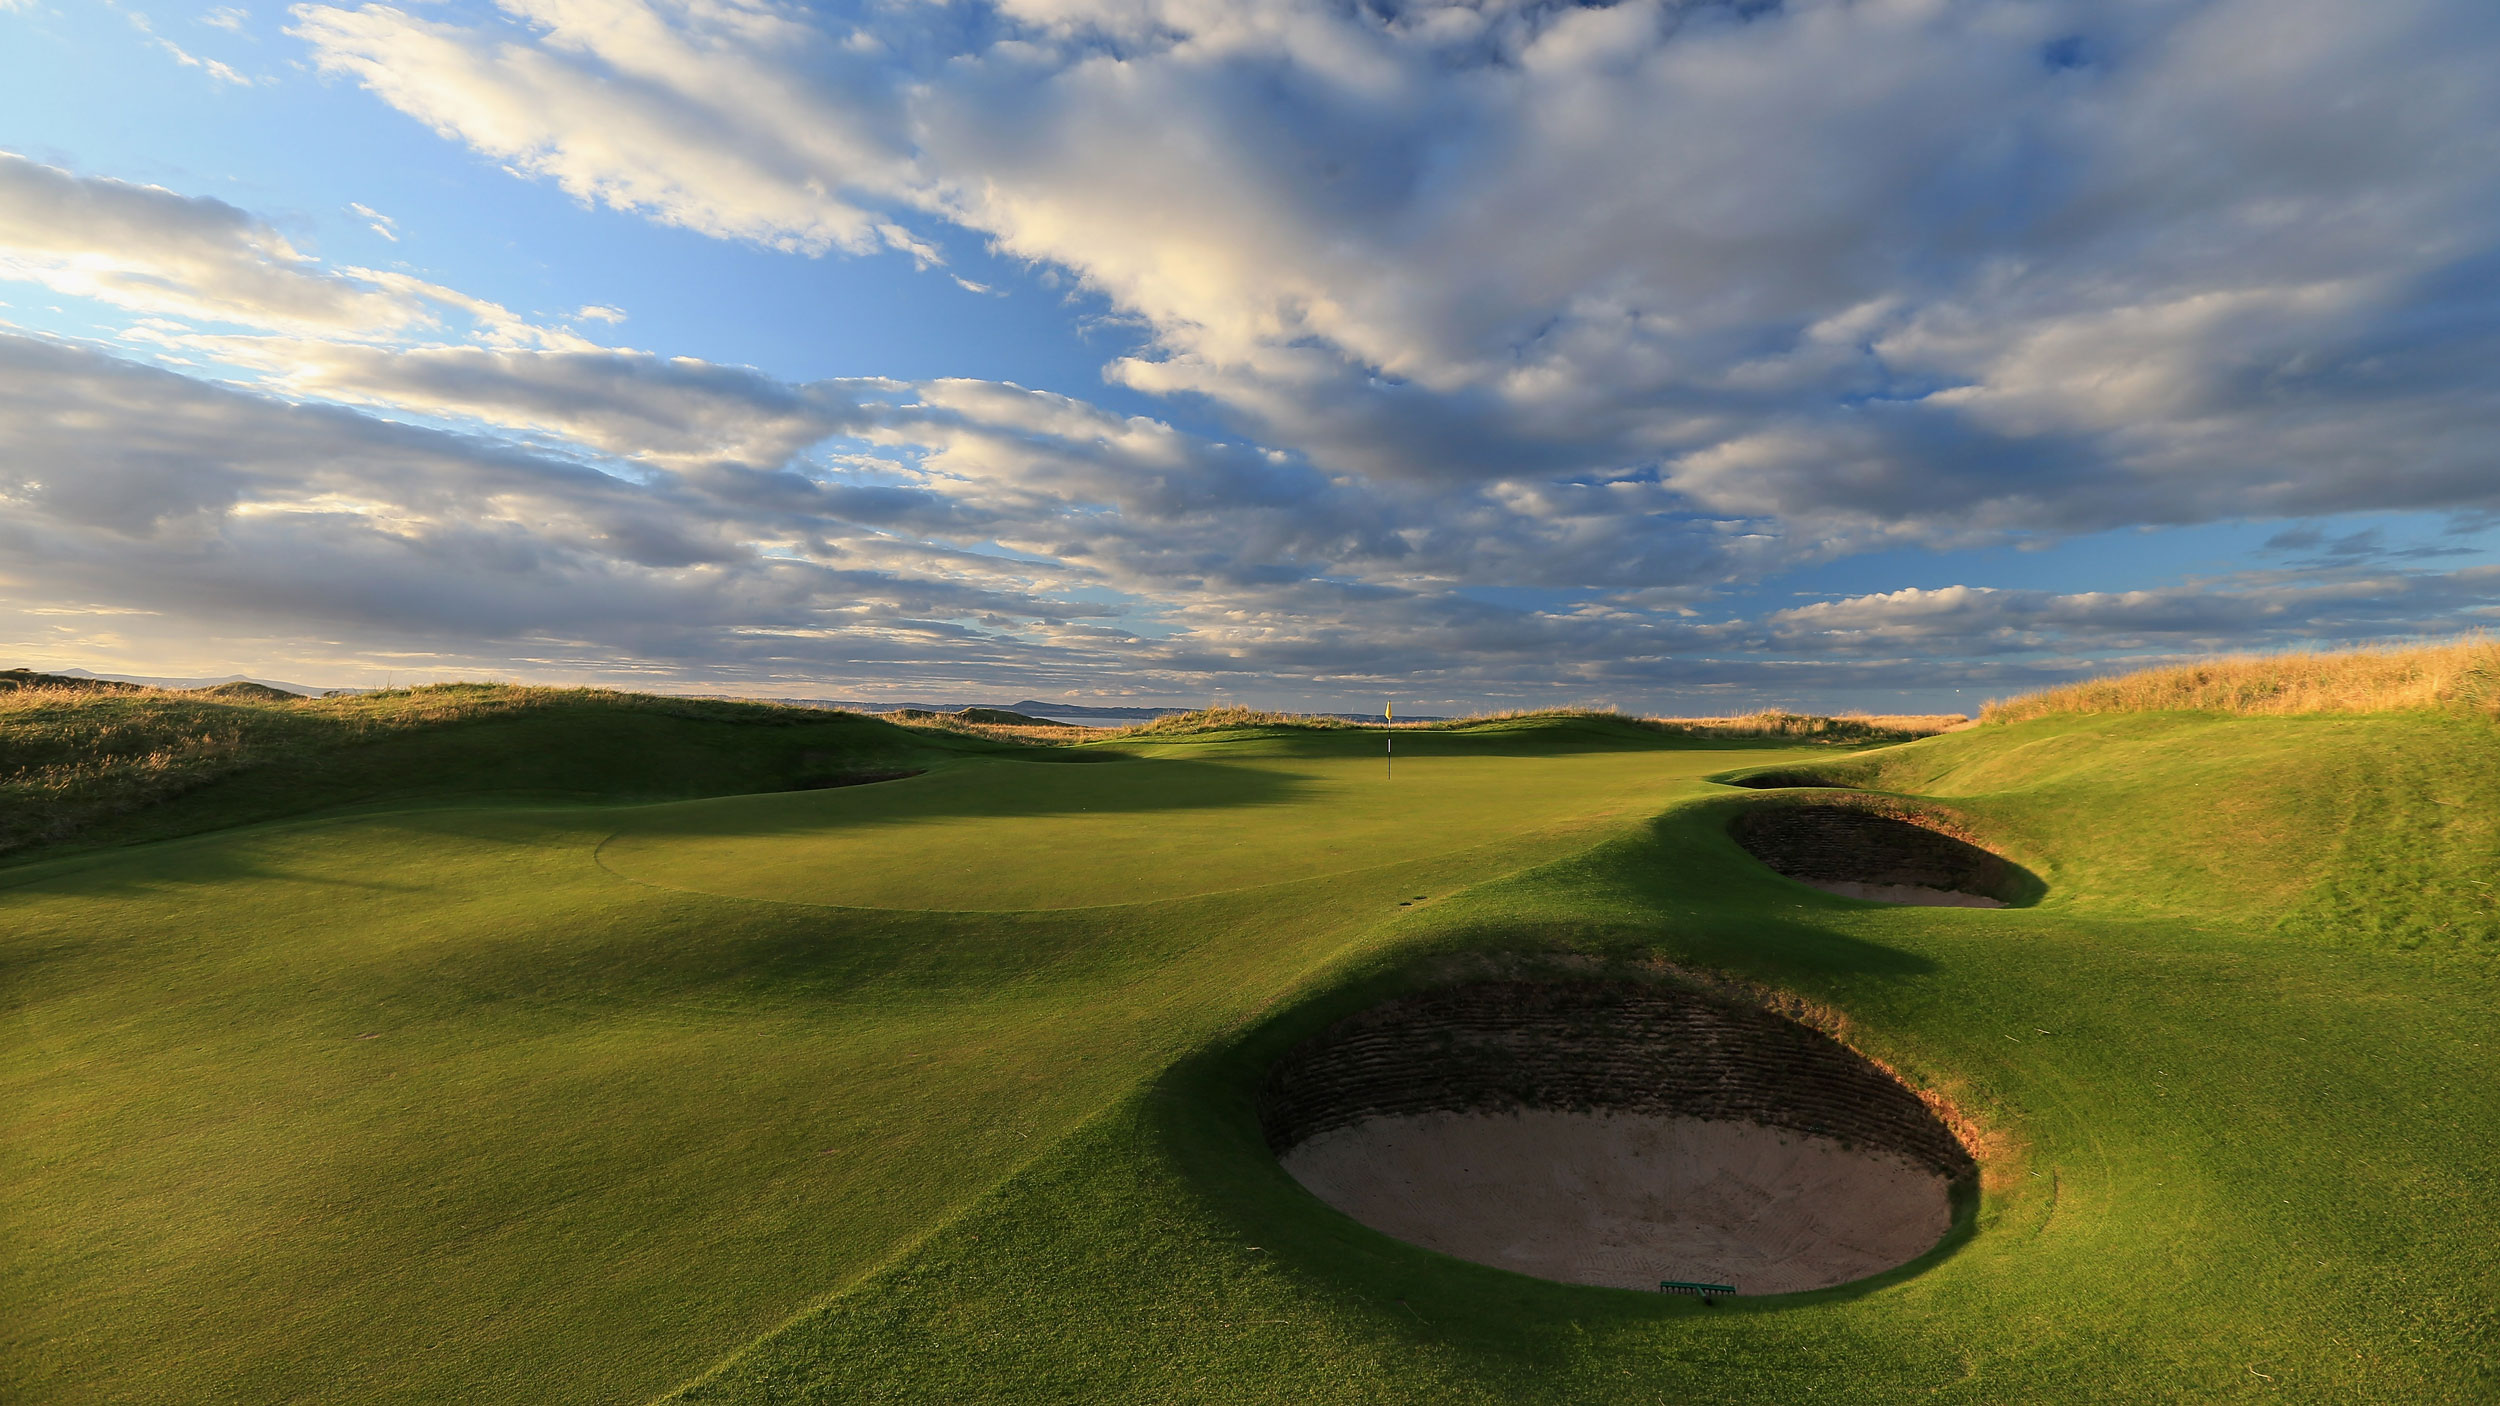 Легендарное поле. Muirfield Golf Club, Gullane, Шотландия. Гольф в Шотландии. Scotland the Home of Golf.